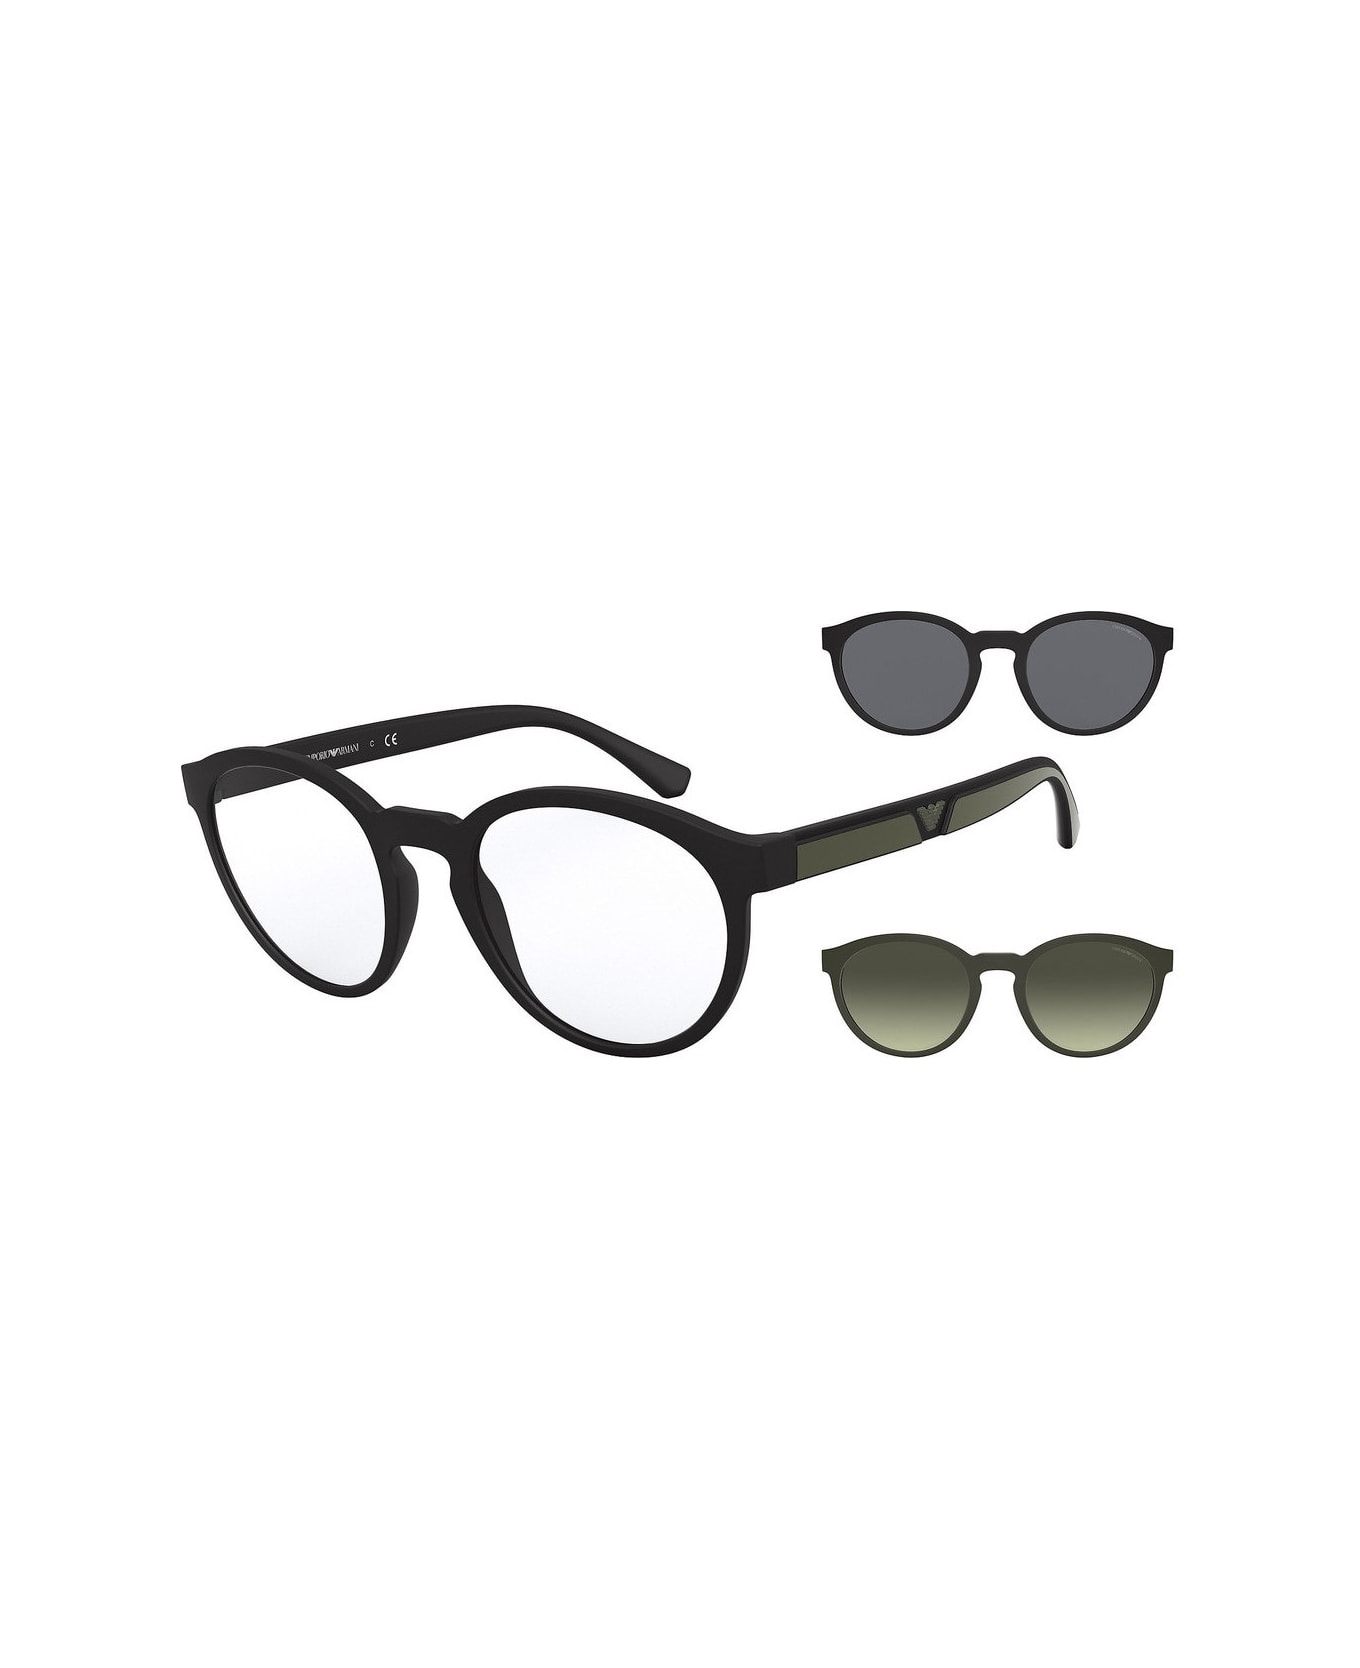 Emporio Armani EA4152 5042/1W Glasses - Nero aggiuntivo nero e verde